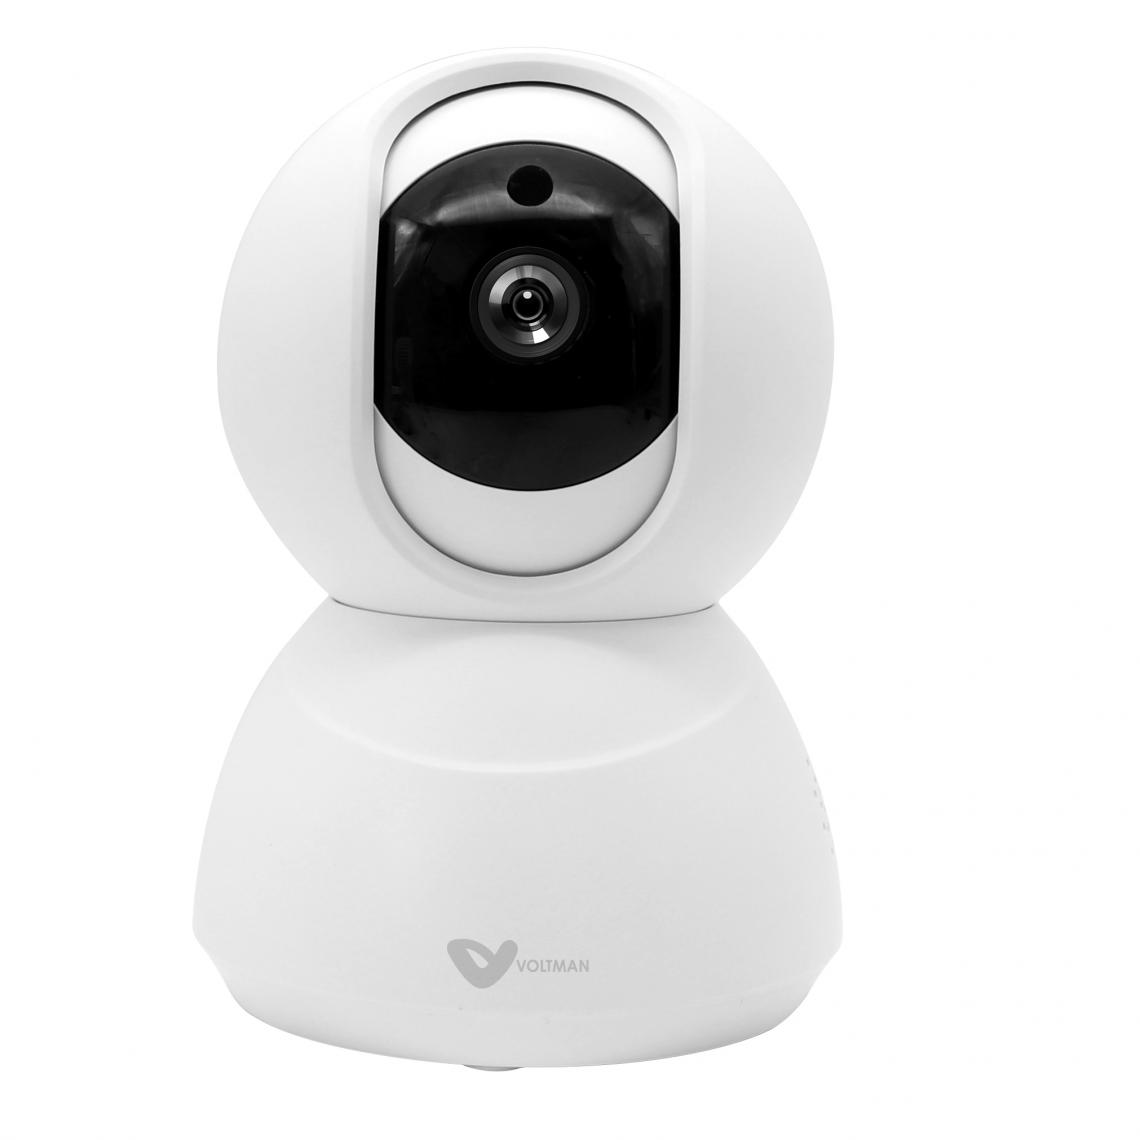 Voltman - Caméra intérieure connectée - détecteur de mouvement, vision de nuit et haut parleur (Sens-E) Wi-Fi - Voltman - Alarme connectée